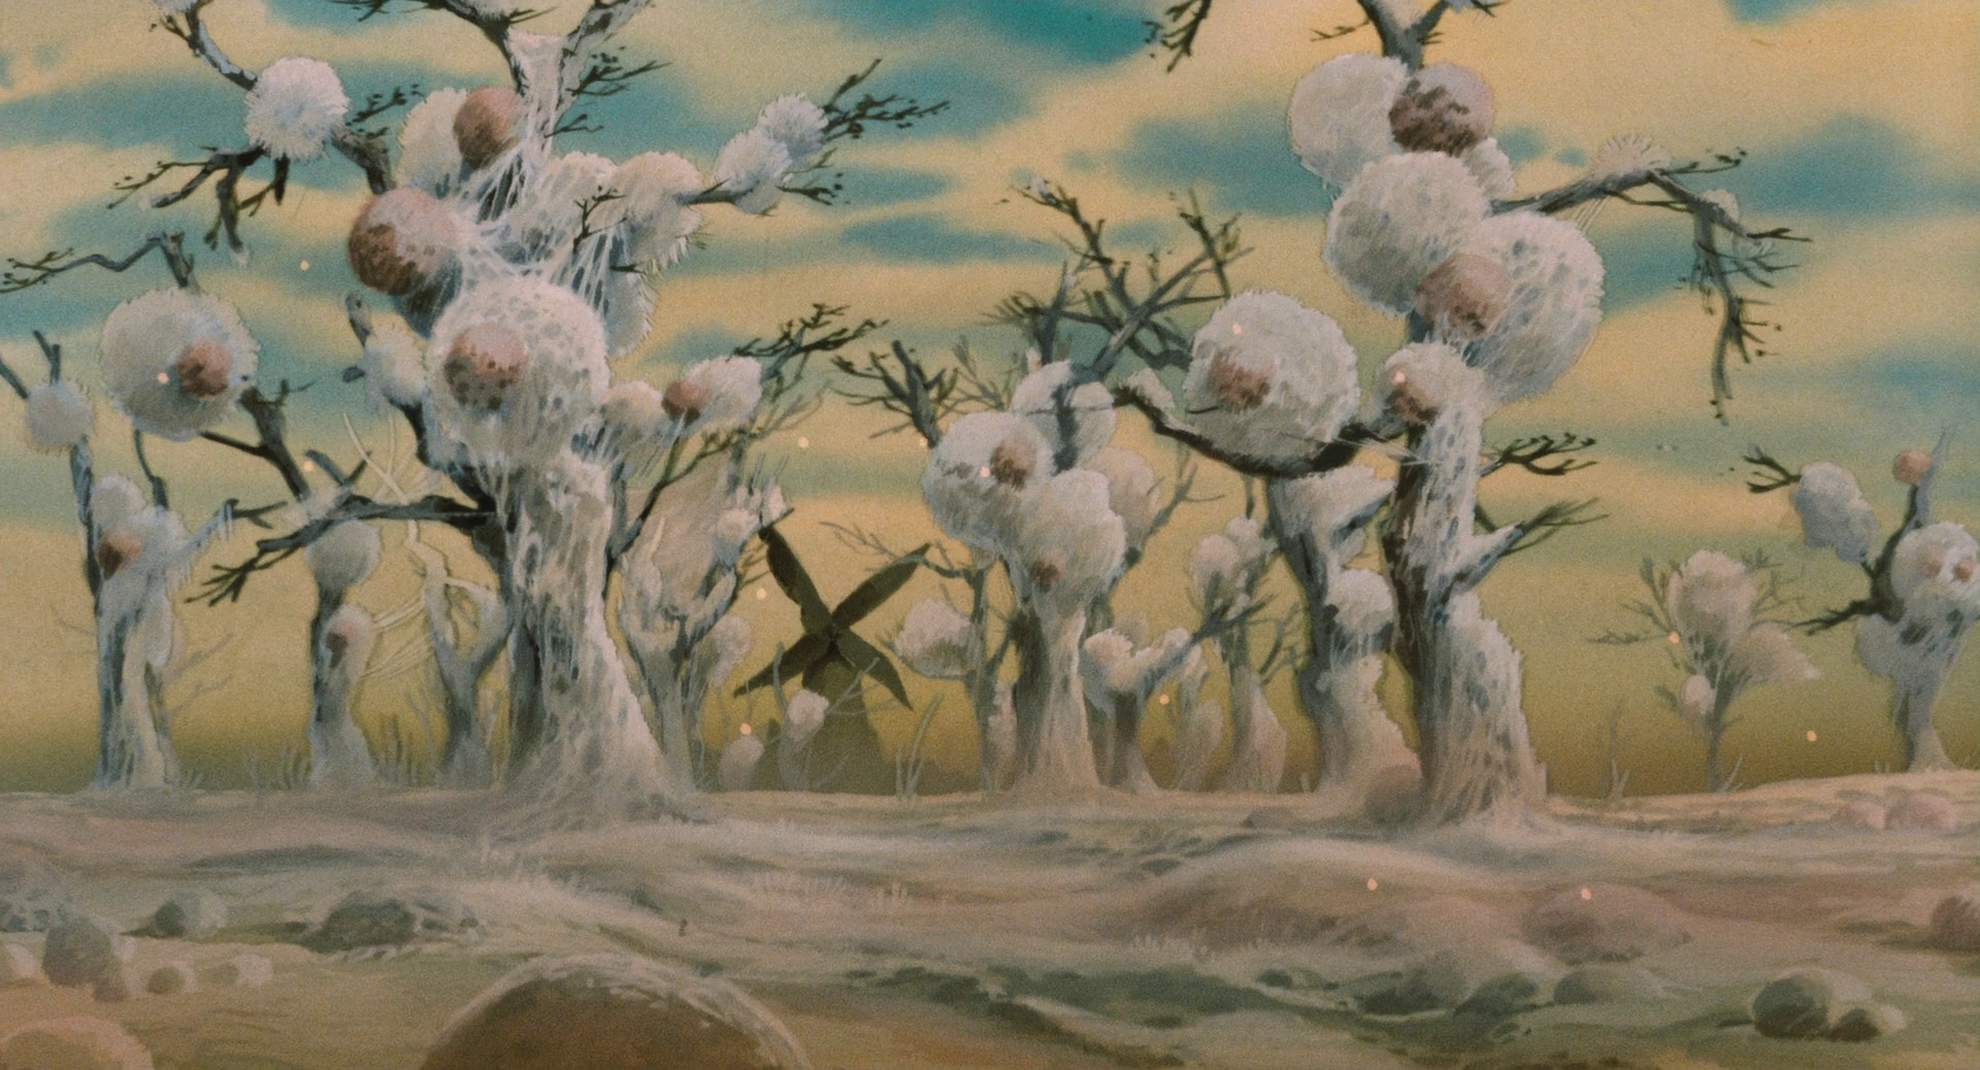 кадр из мультфильма "Навсикая из Долины ветров"